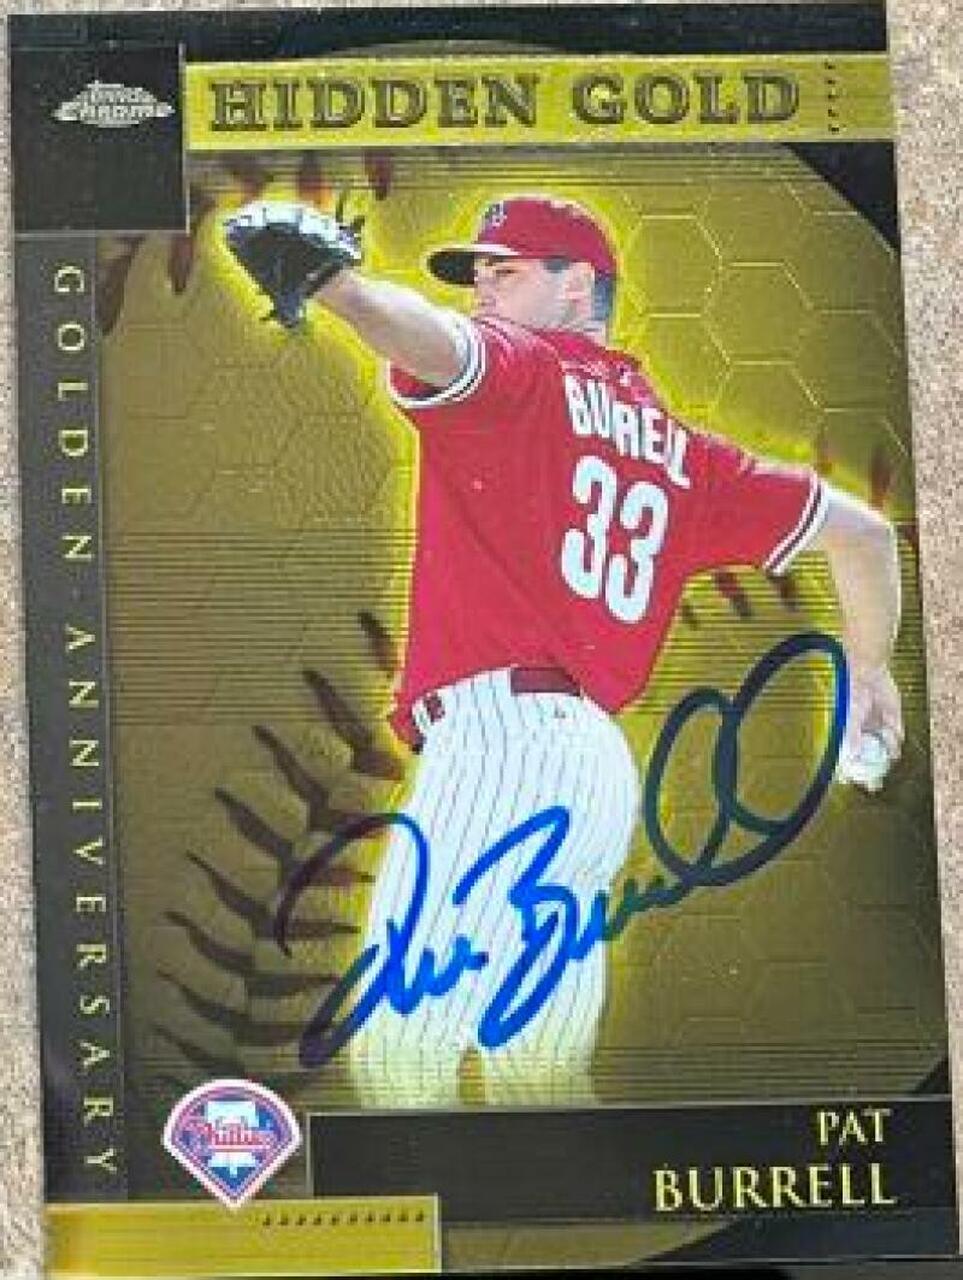 Pat Burrell Signed 2001 Topps Chrome Golden Anniversary Baseball Card - Philadelphia Phillies - PastPros